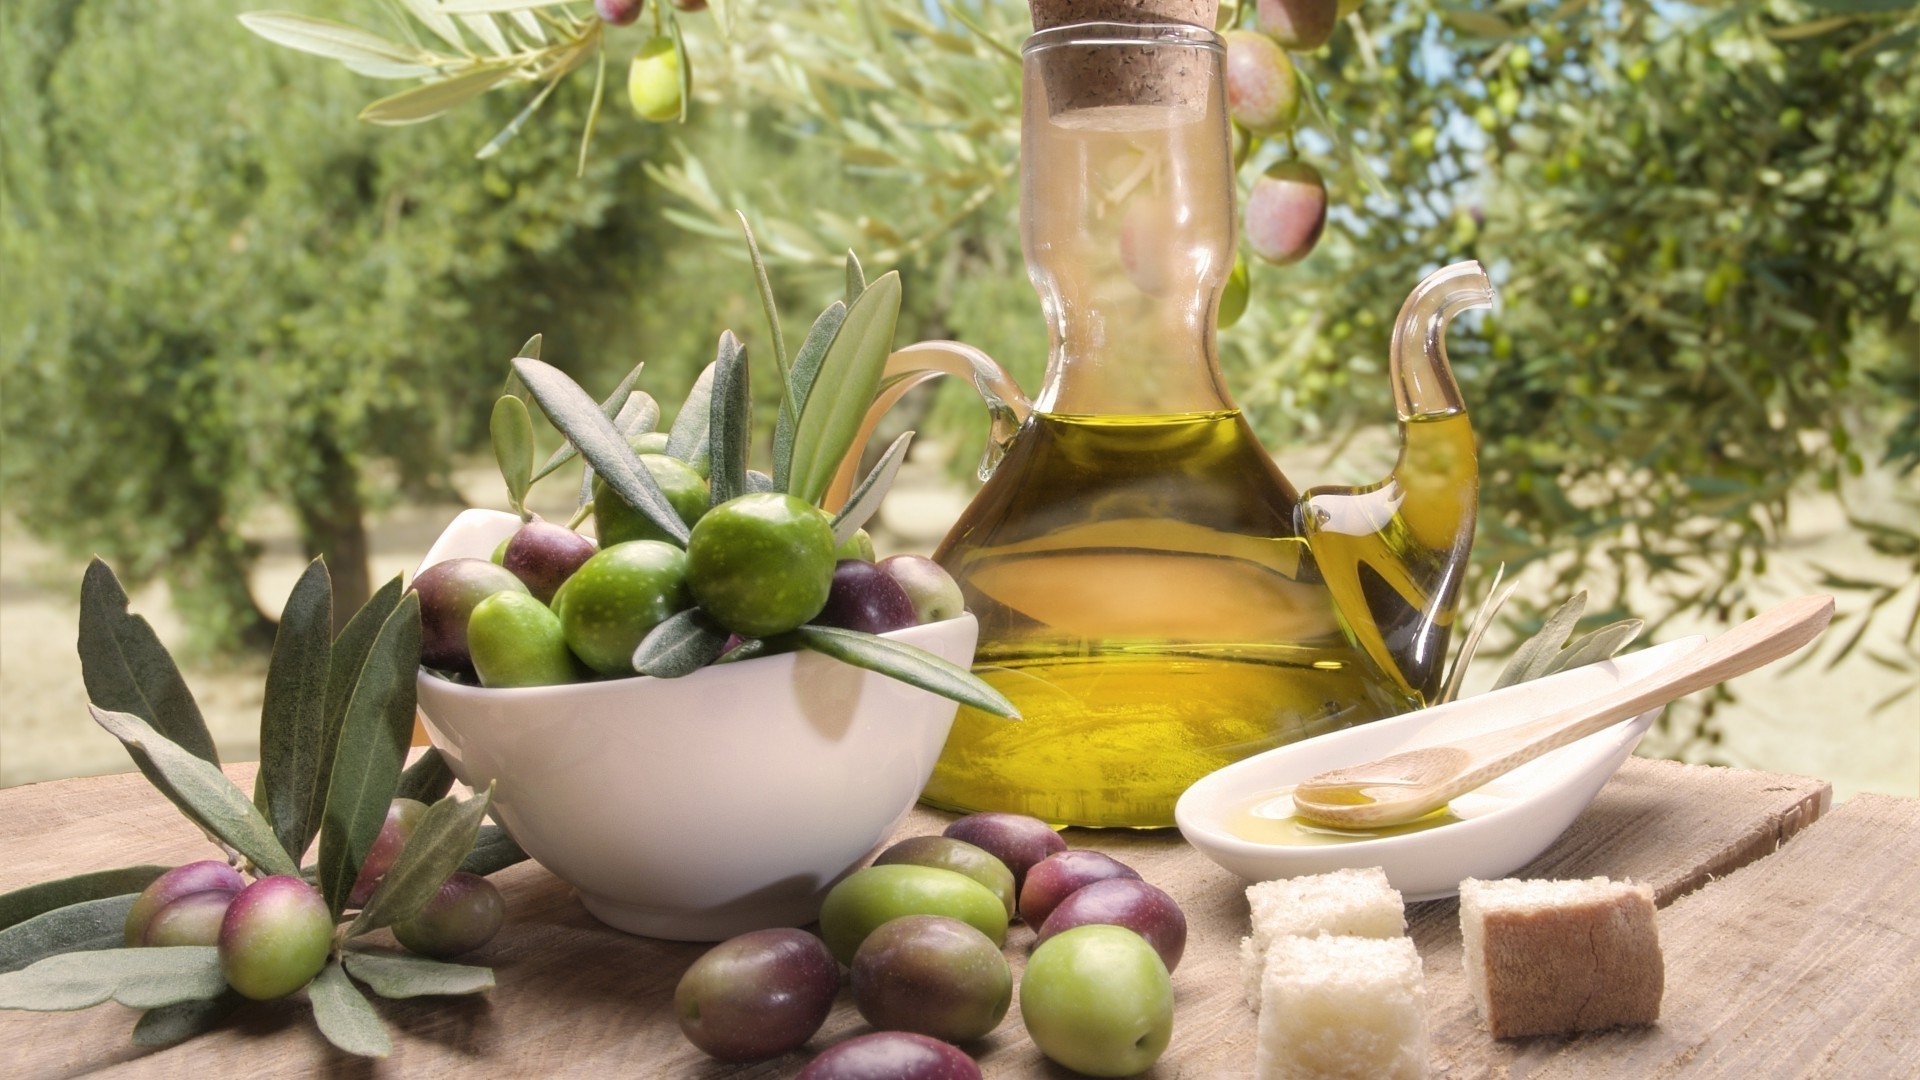 food & drink food oil fruit olive oil table glass wood leaf still life bottle health healthy nature wooden apple